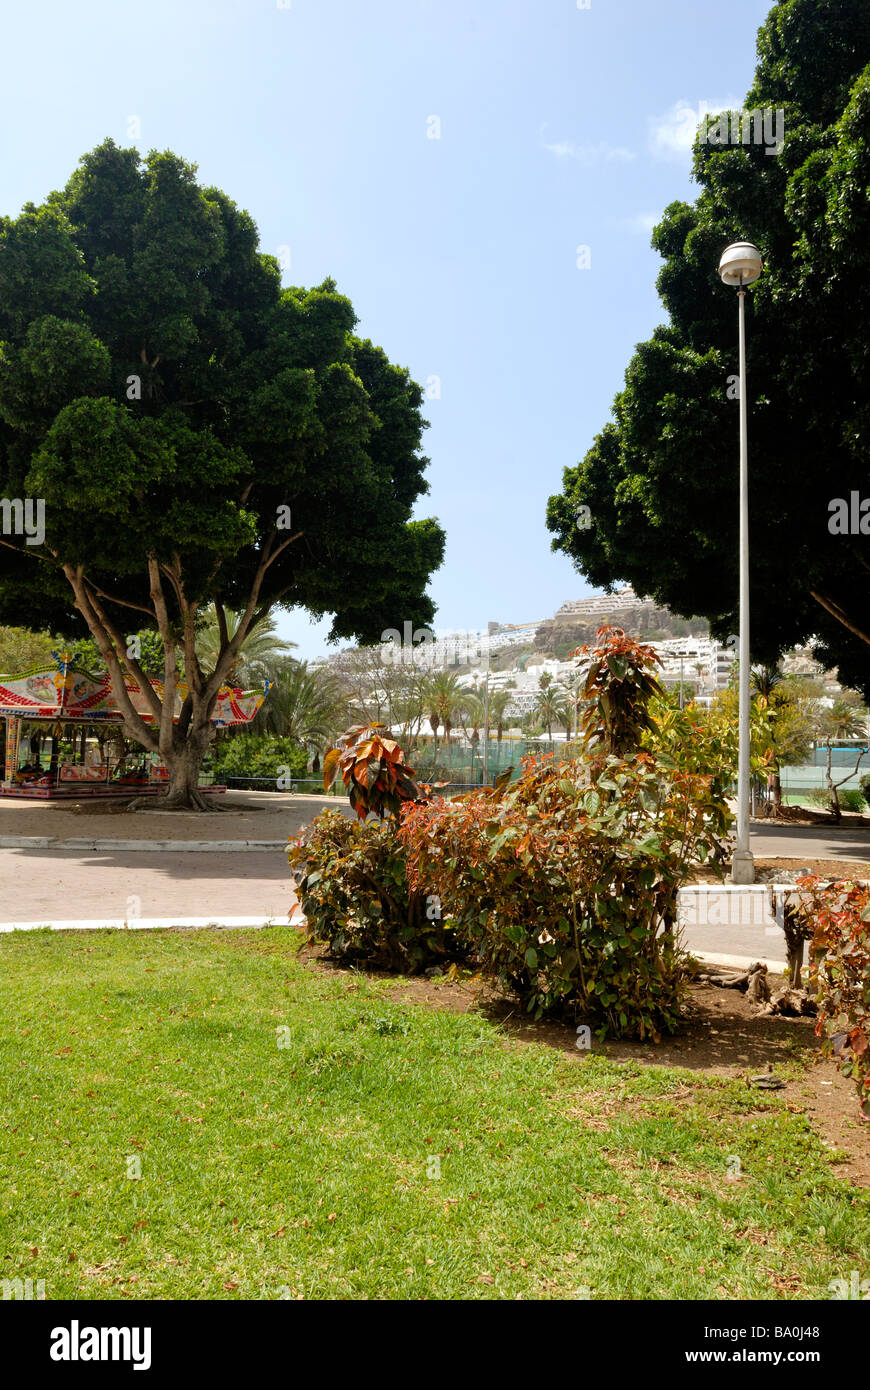 Eine schöne Aussicht von Avenida del Valle in den Park. Puerto Rico, Gran Canaria, Kanarische Inseln, Spanien, Europa. Stockfoto